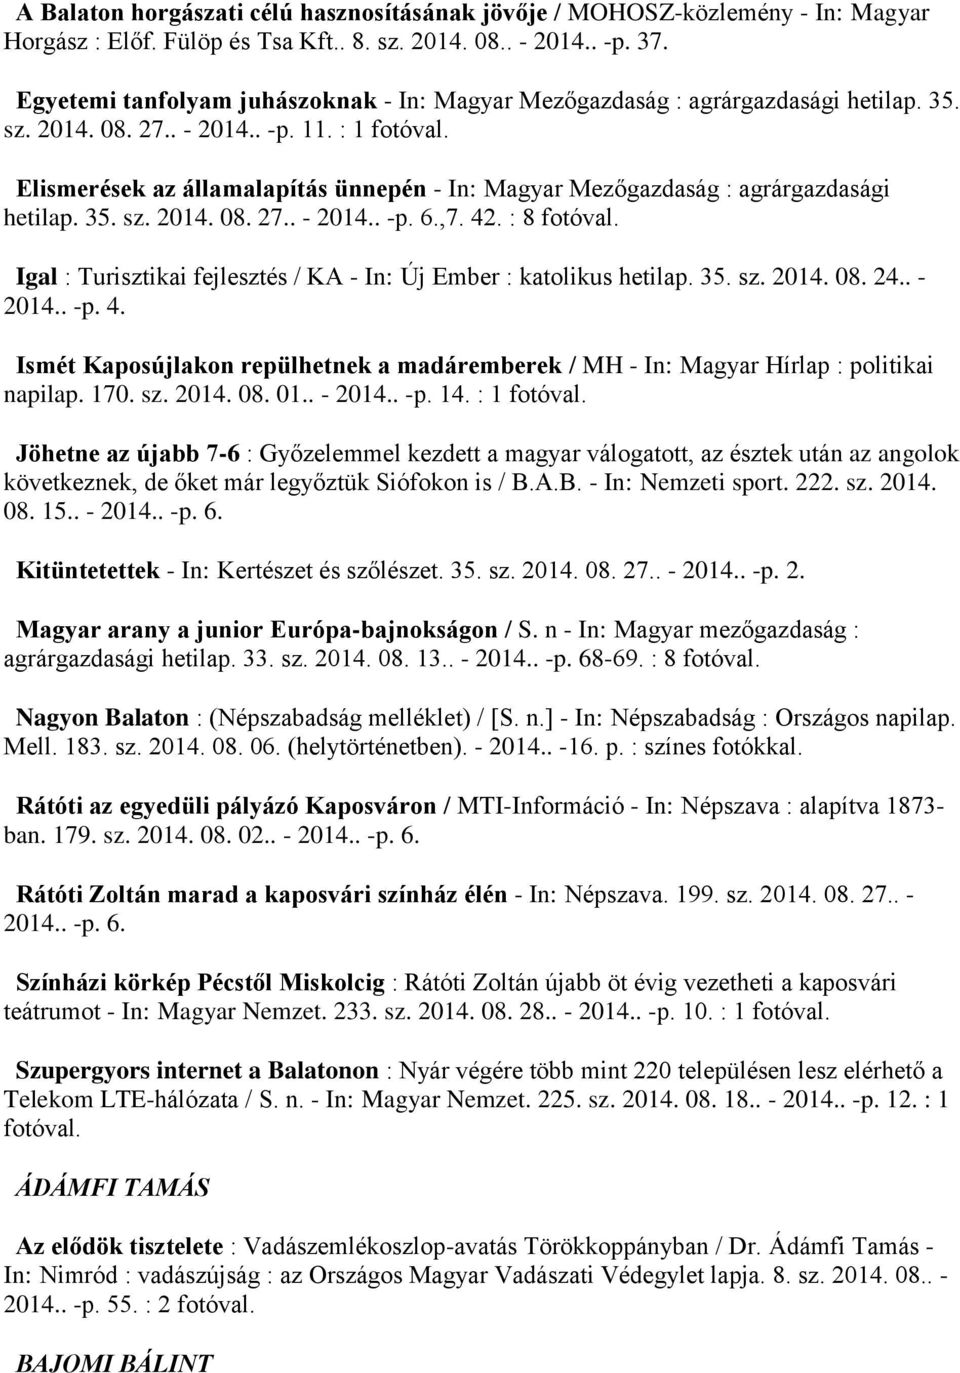 Elismerések az államalapítás ünnepén - In: Magyar Mezőgazdaság : agrárgazdasági hetilap. 35. sz. 2014. 08. 27.. - 2014.. -p. 6.,7. 42. : 8 fotóval.